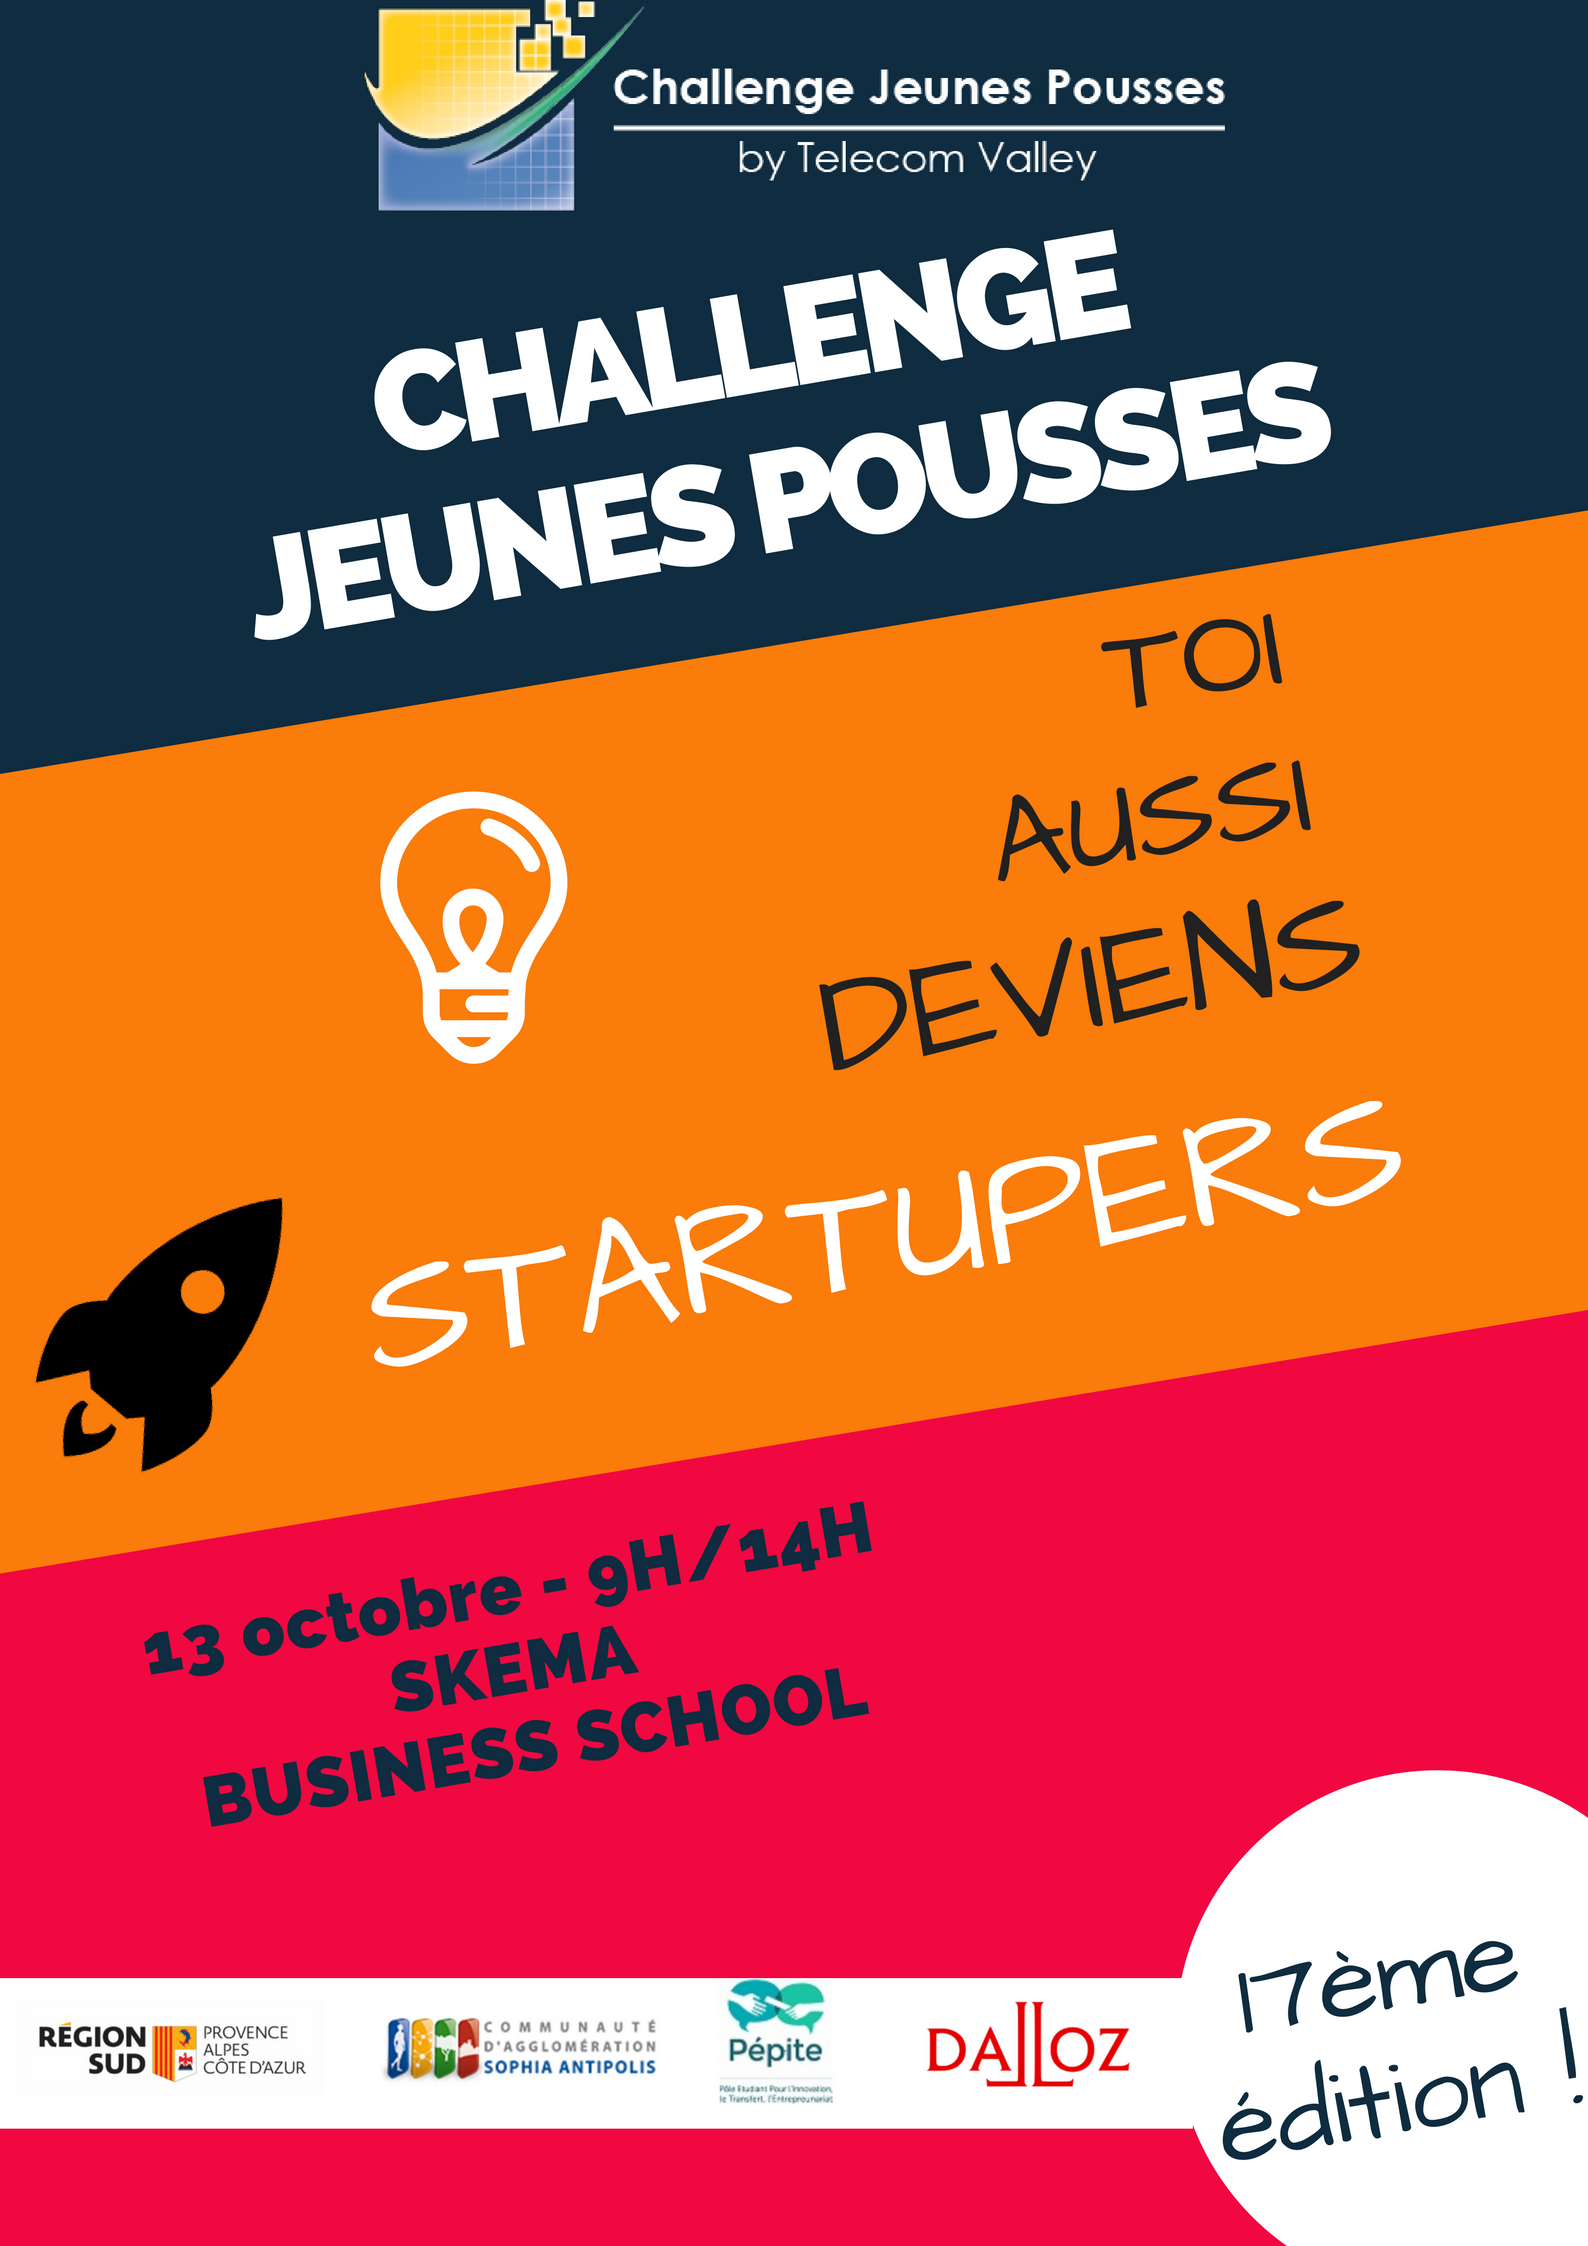 Challenge Jeunes Pousses 2018-telecom valley